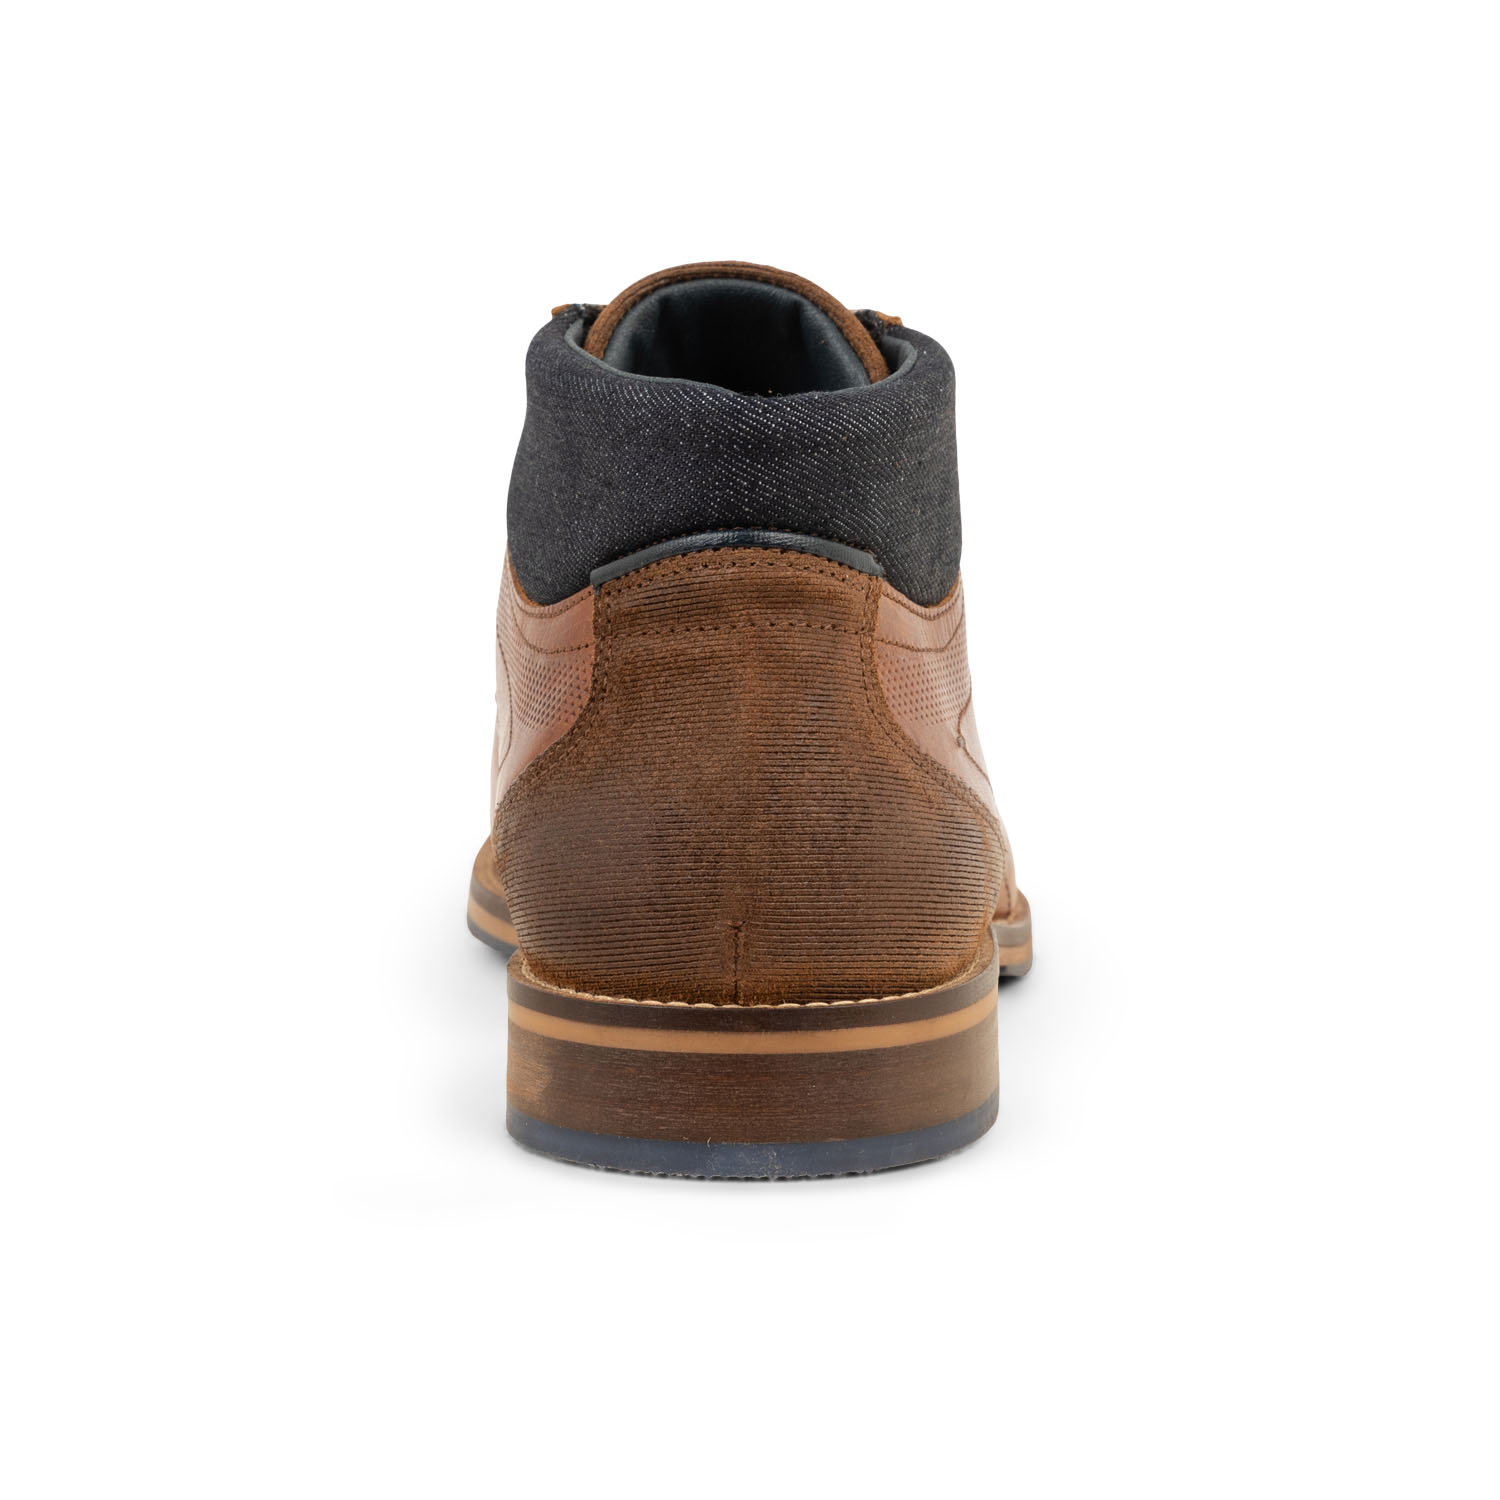 03 - VARESH ANKLE LACE - BULLBOXER - Chaussures à lacets - Cuir